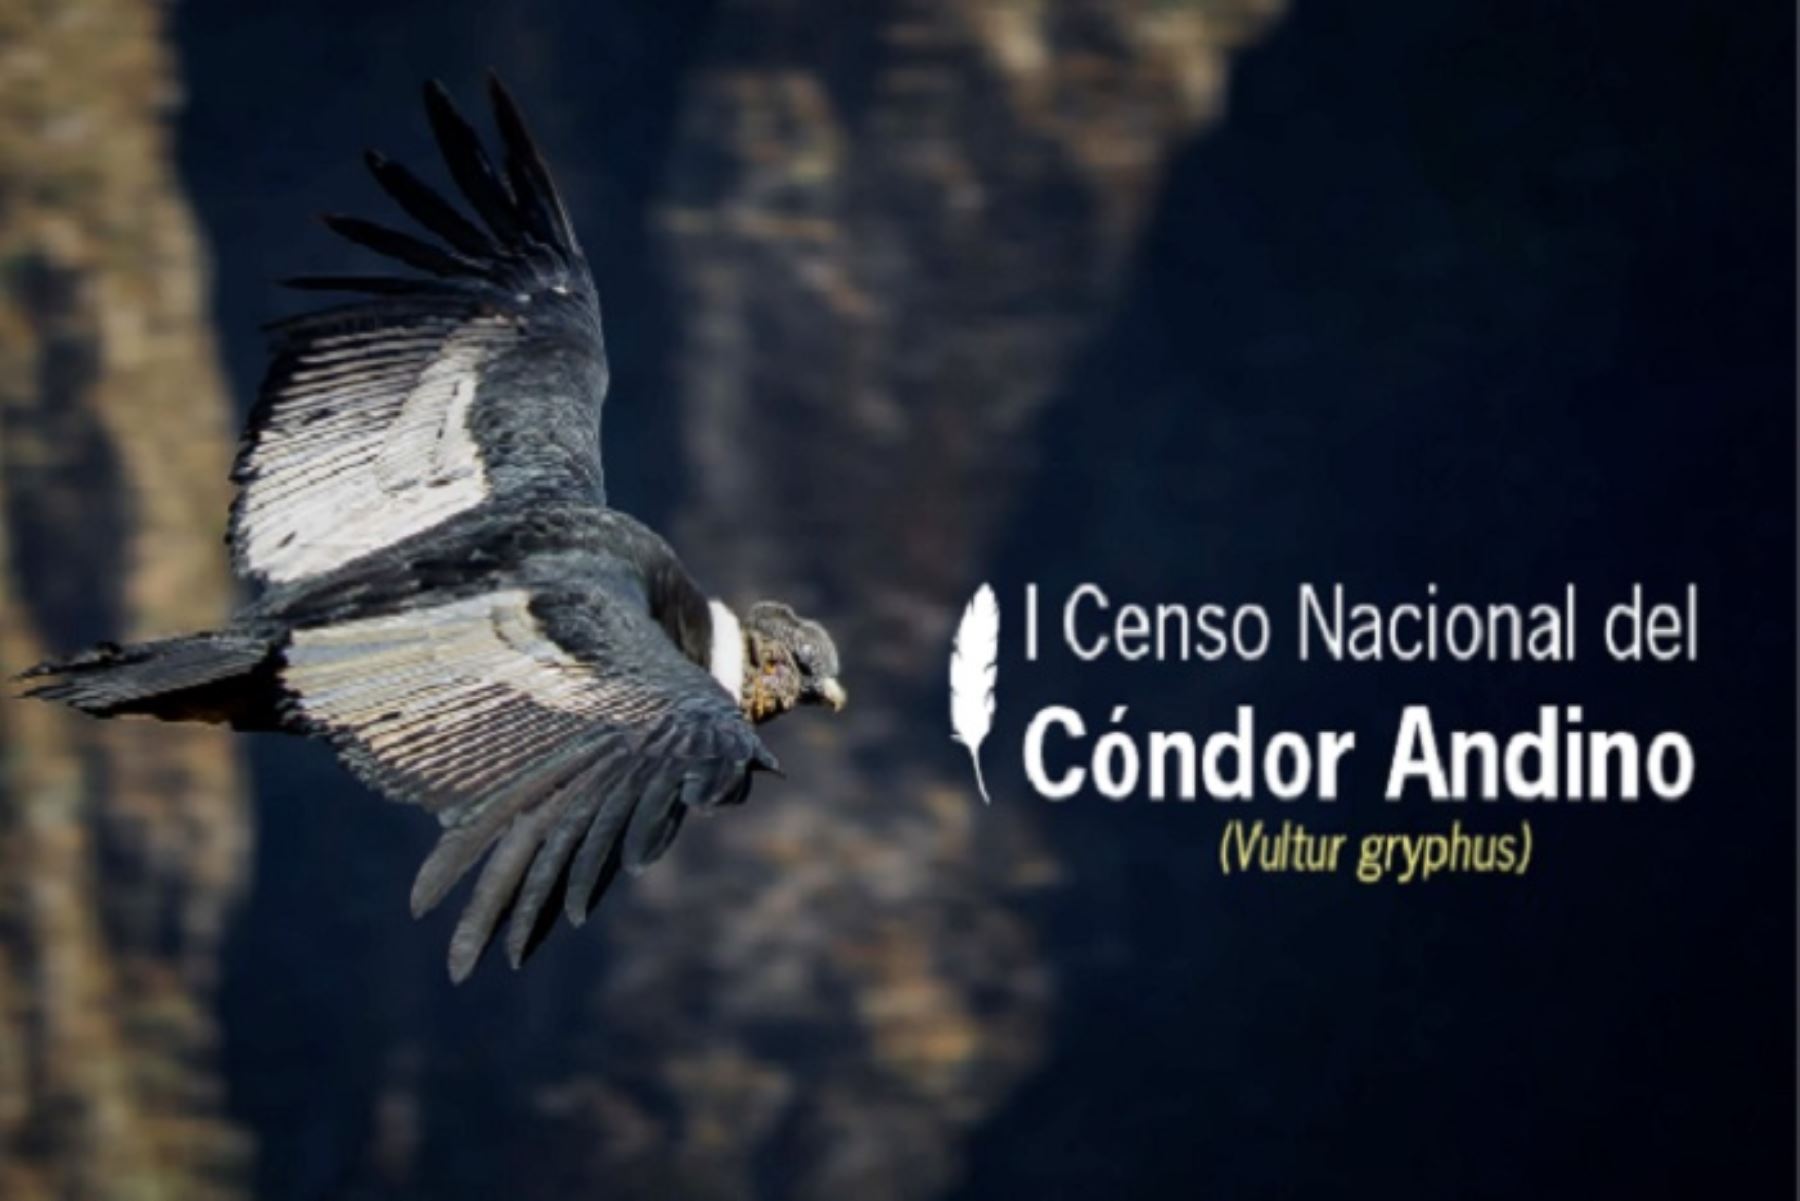 I Censo Nacional del Cóndor Andino: Cusco y Arequipa definen zonas de observación